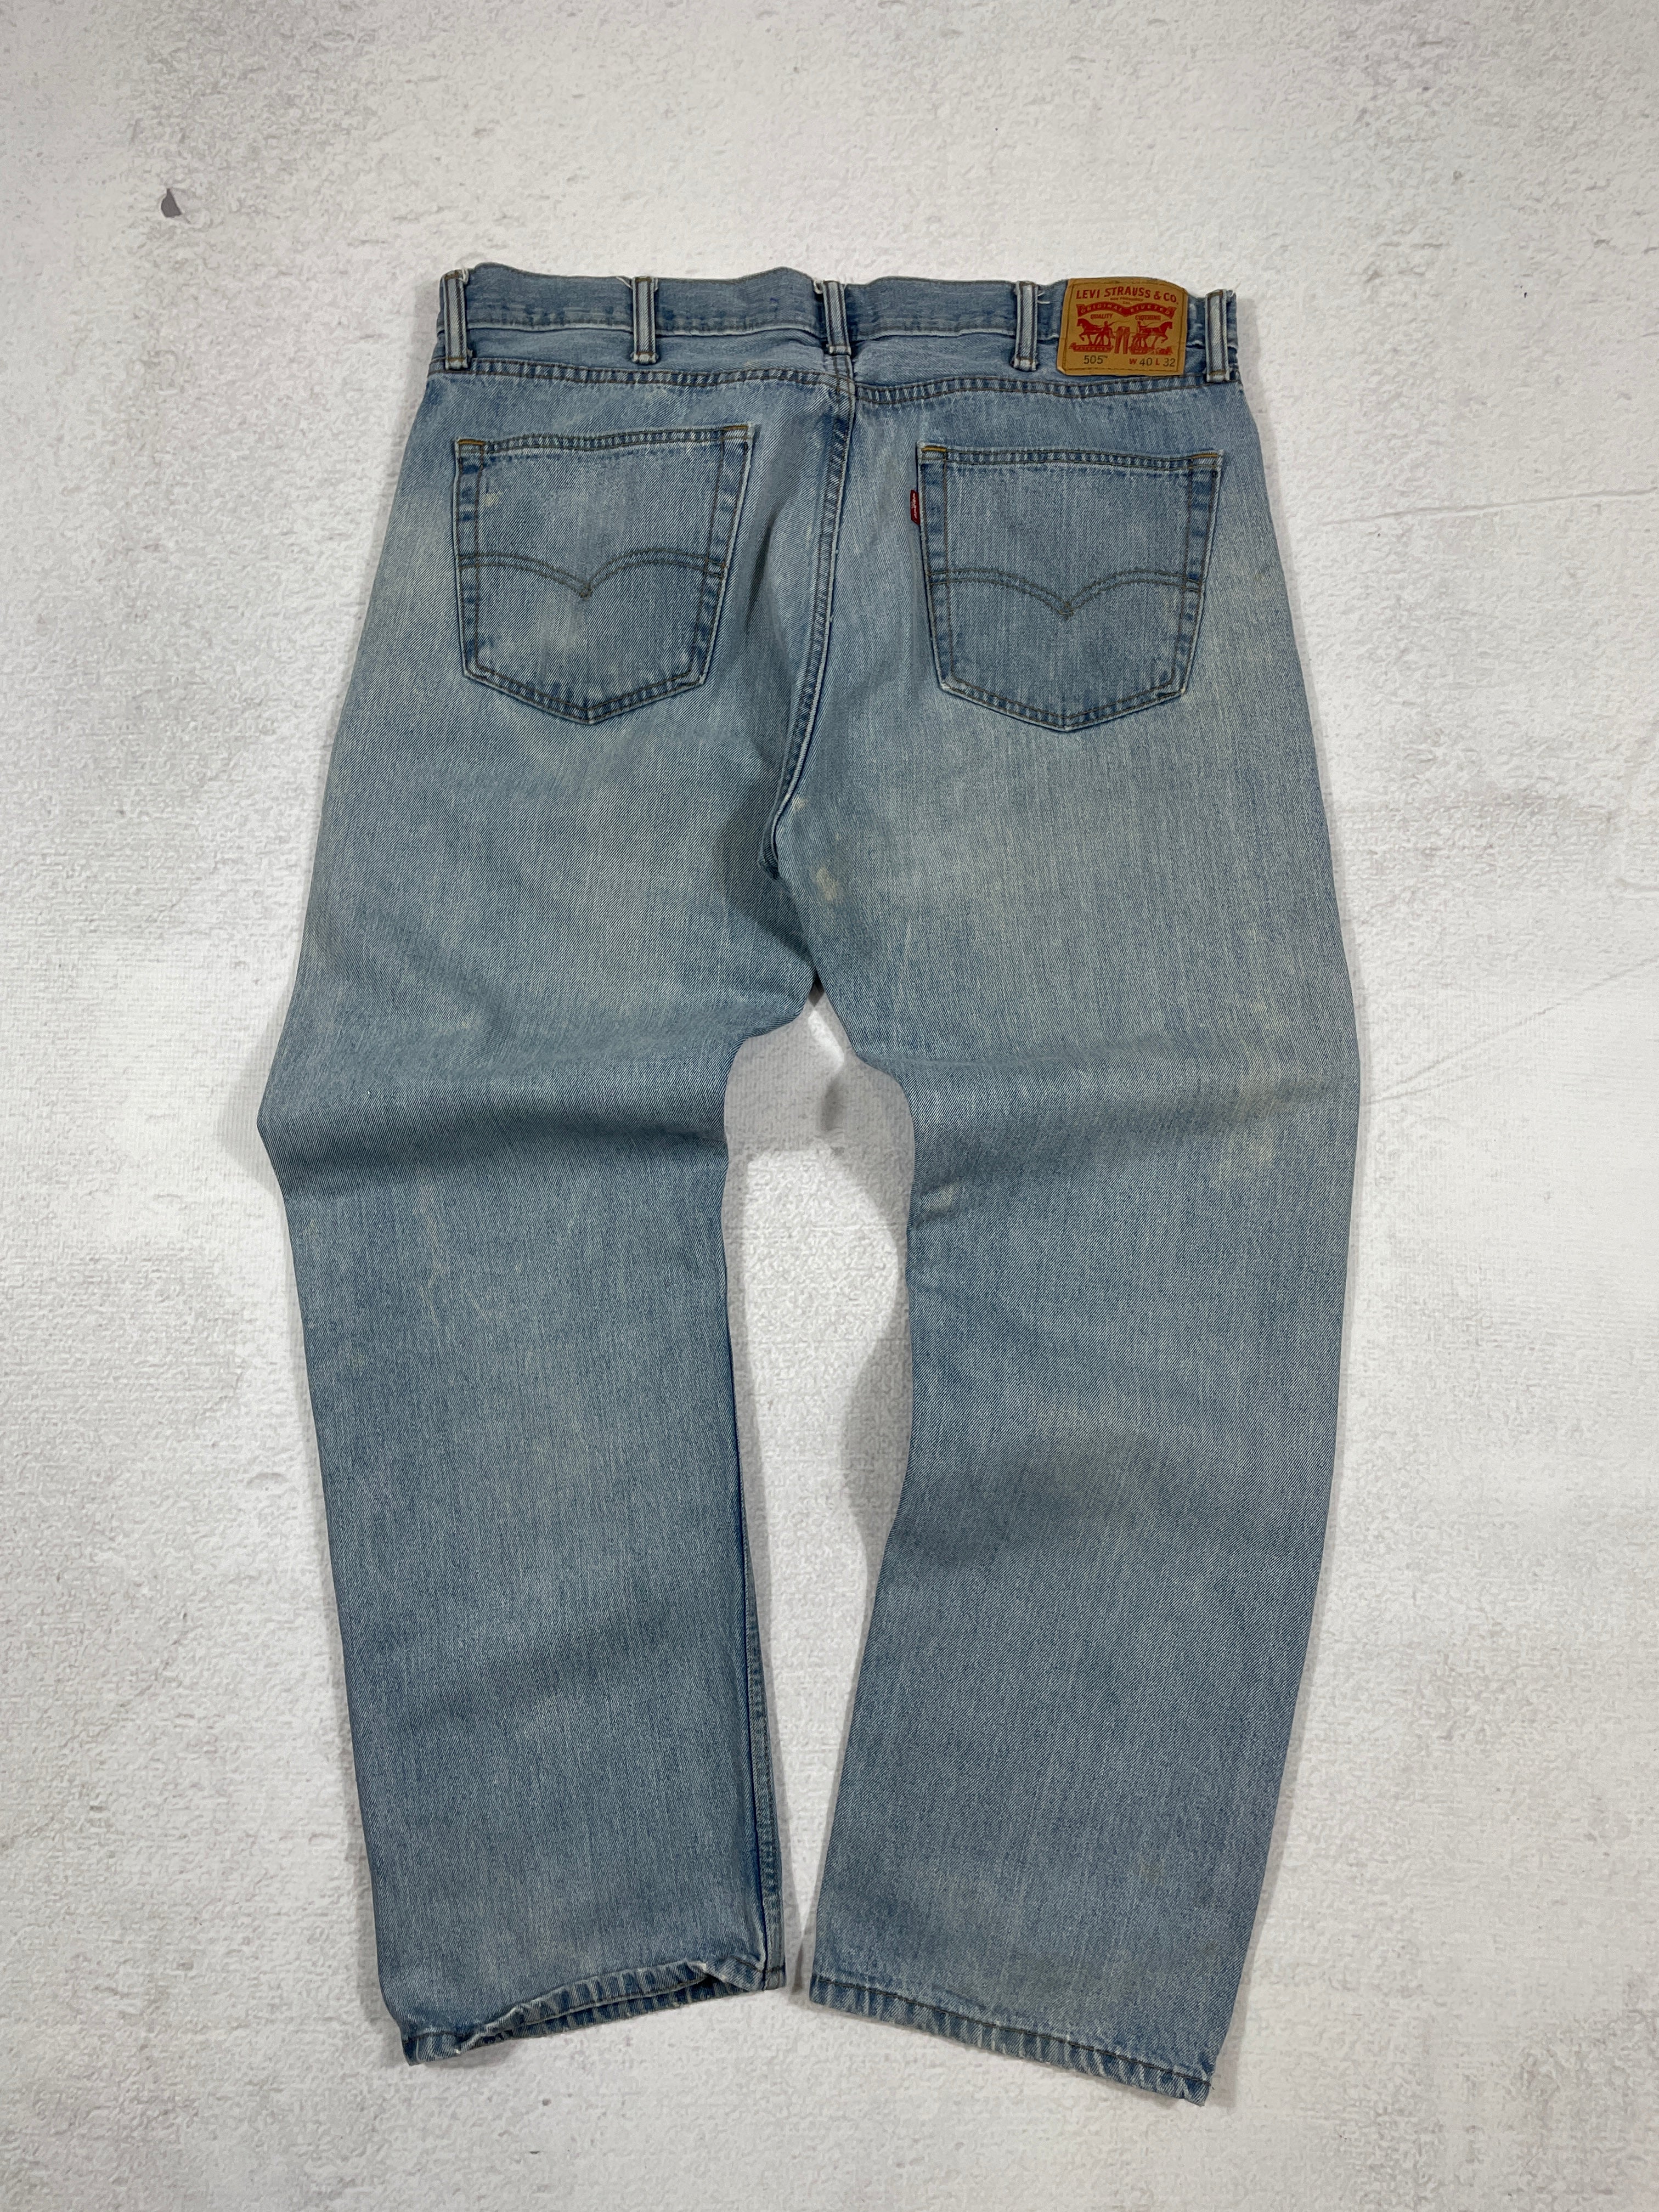 Vintage Levis 505 Jeans - Men's 40Wx32L